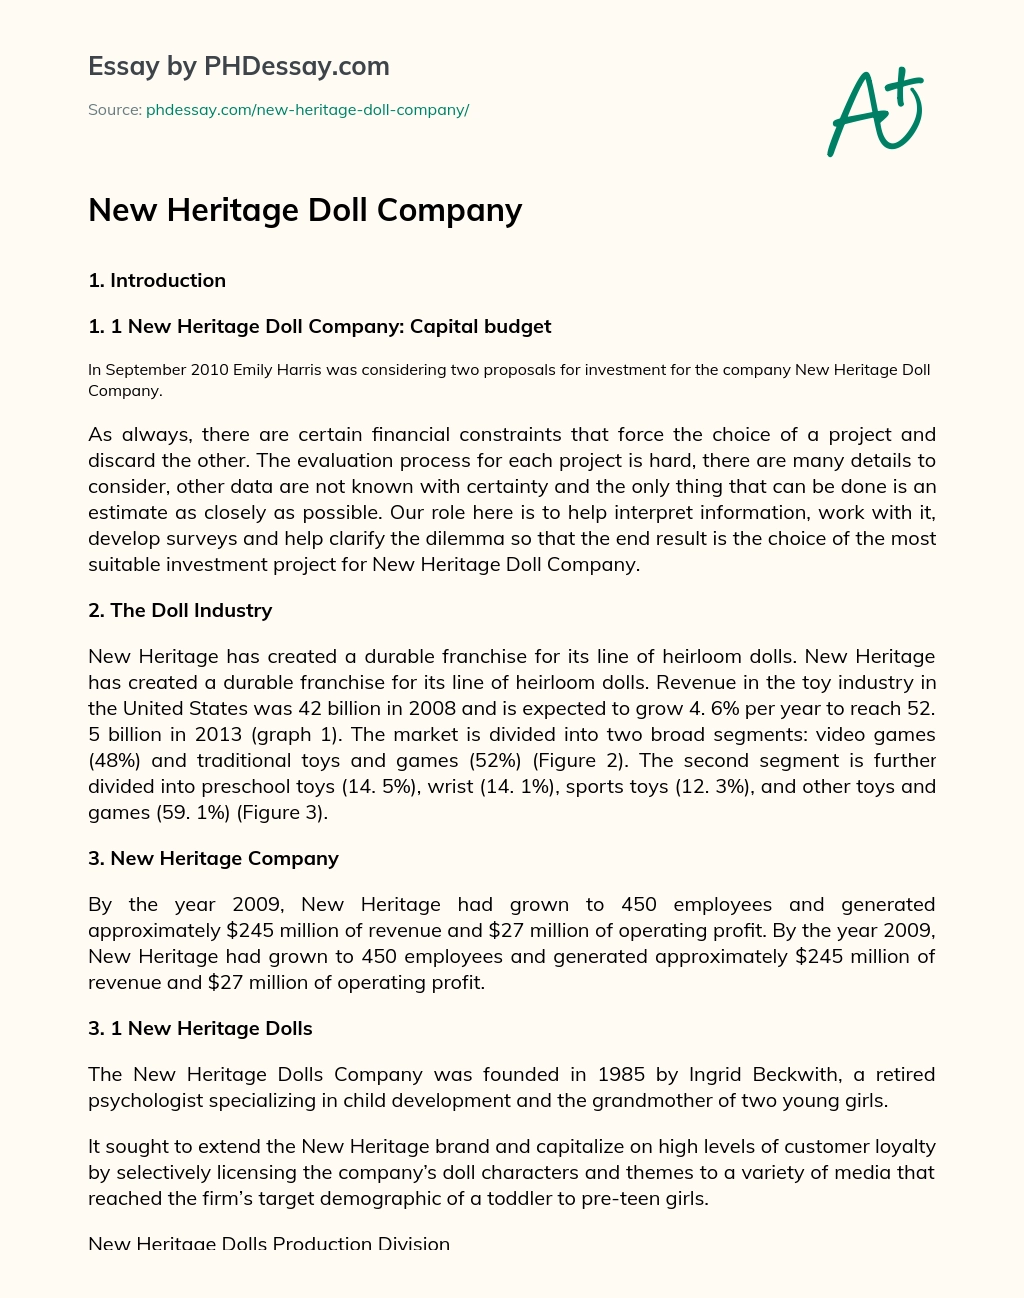 New Heritage Doll Company essay